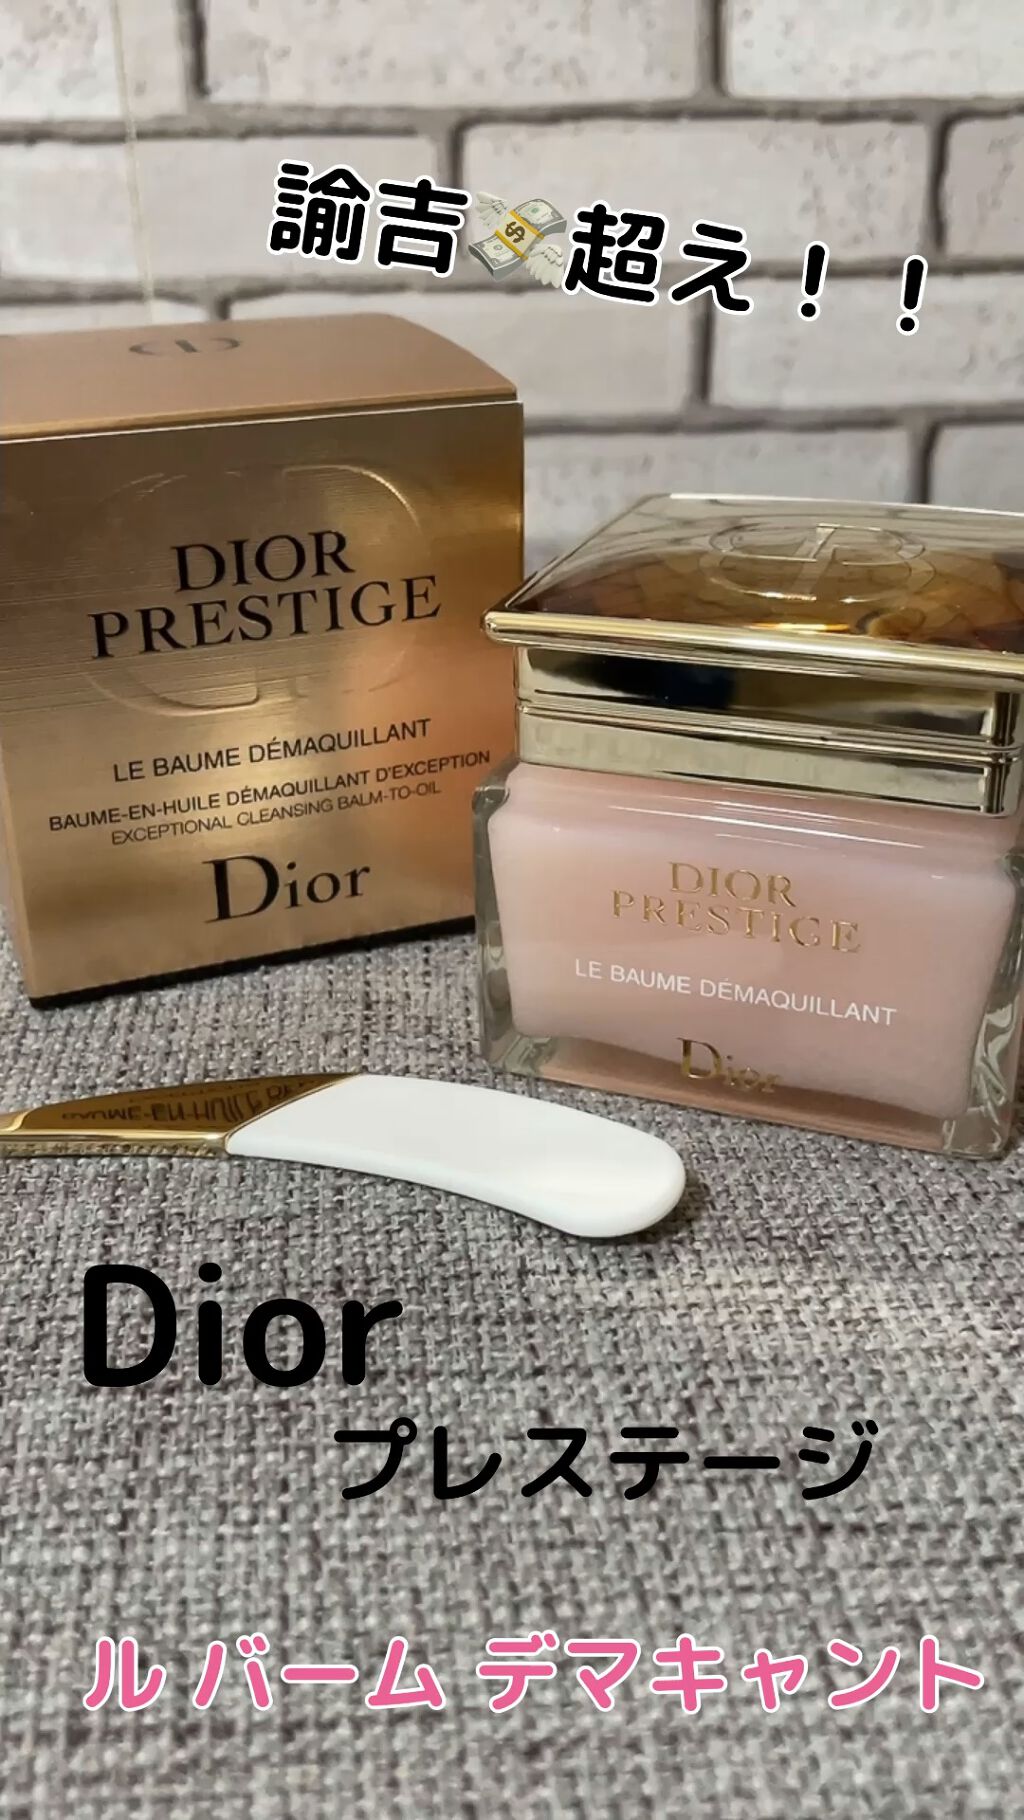 Dior プレステージ ル バーム デマキヤント スパチュラ - クレンジング